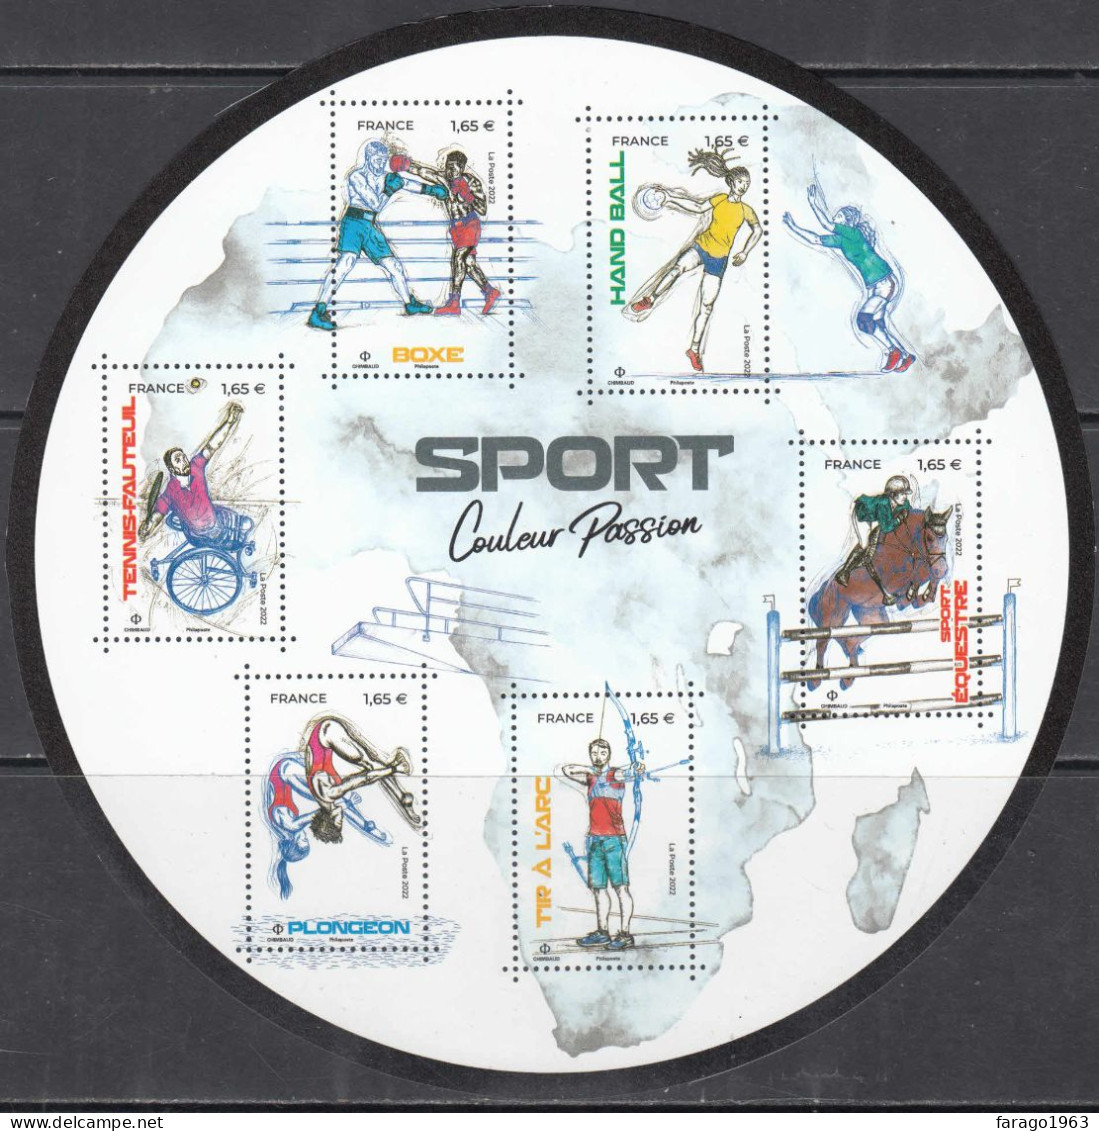 2022 France Sport Equestrian Horses Archery Boxing Miniature Sheet Of 6 MNH @ BELOW FACE VALUE - Ongebruikt